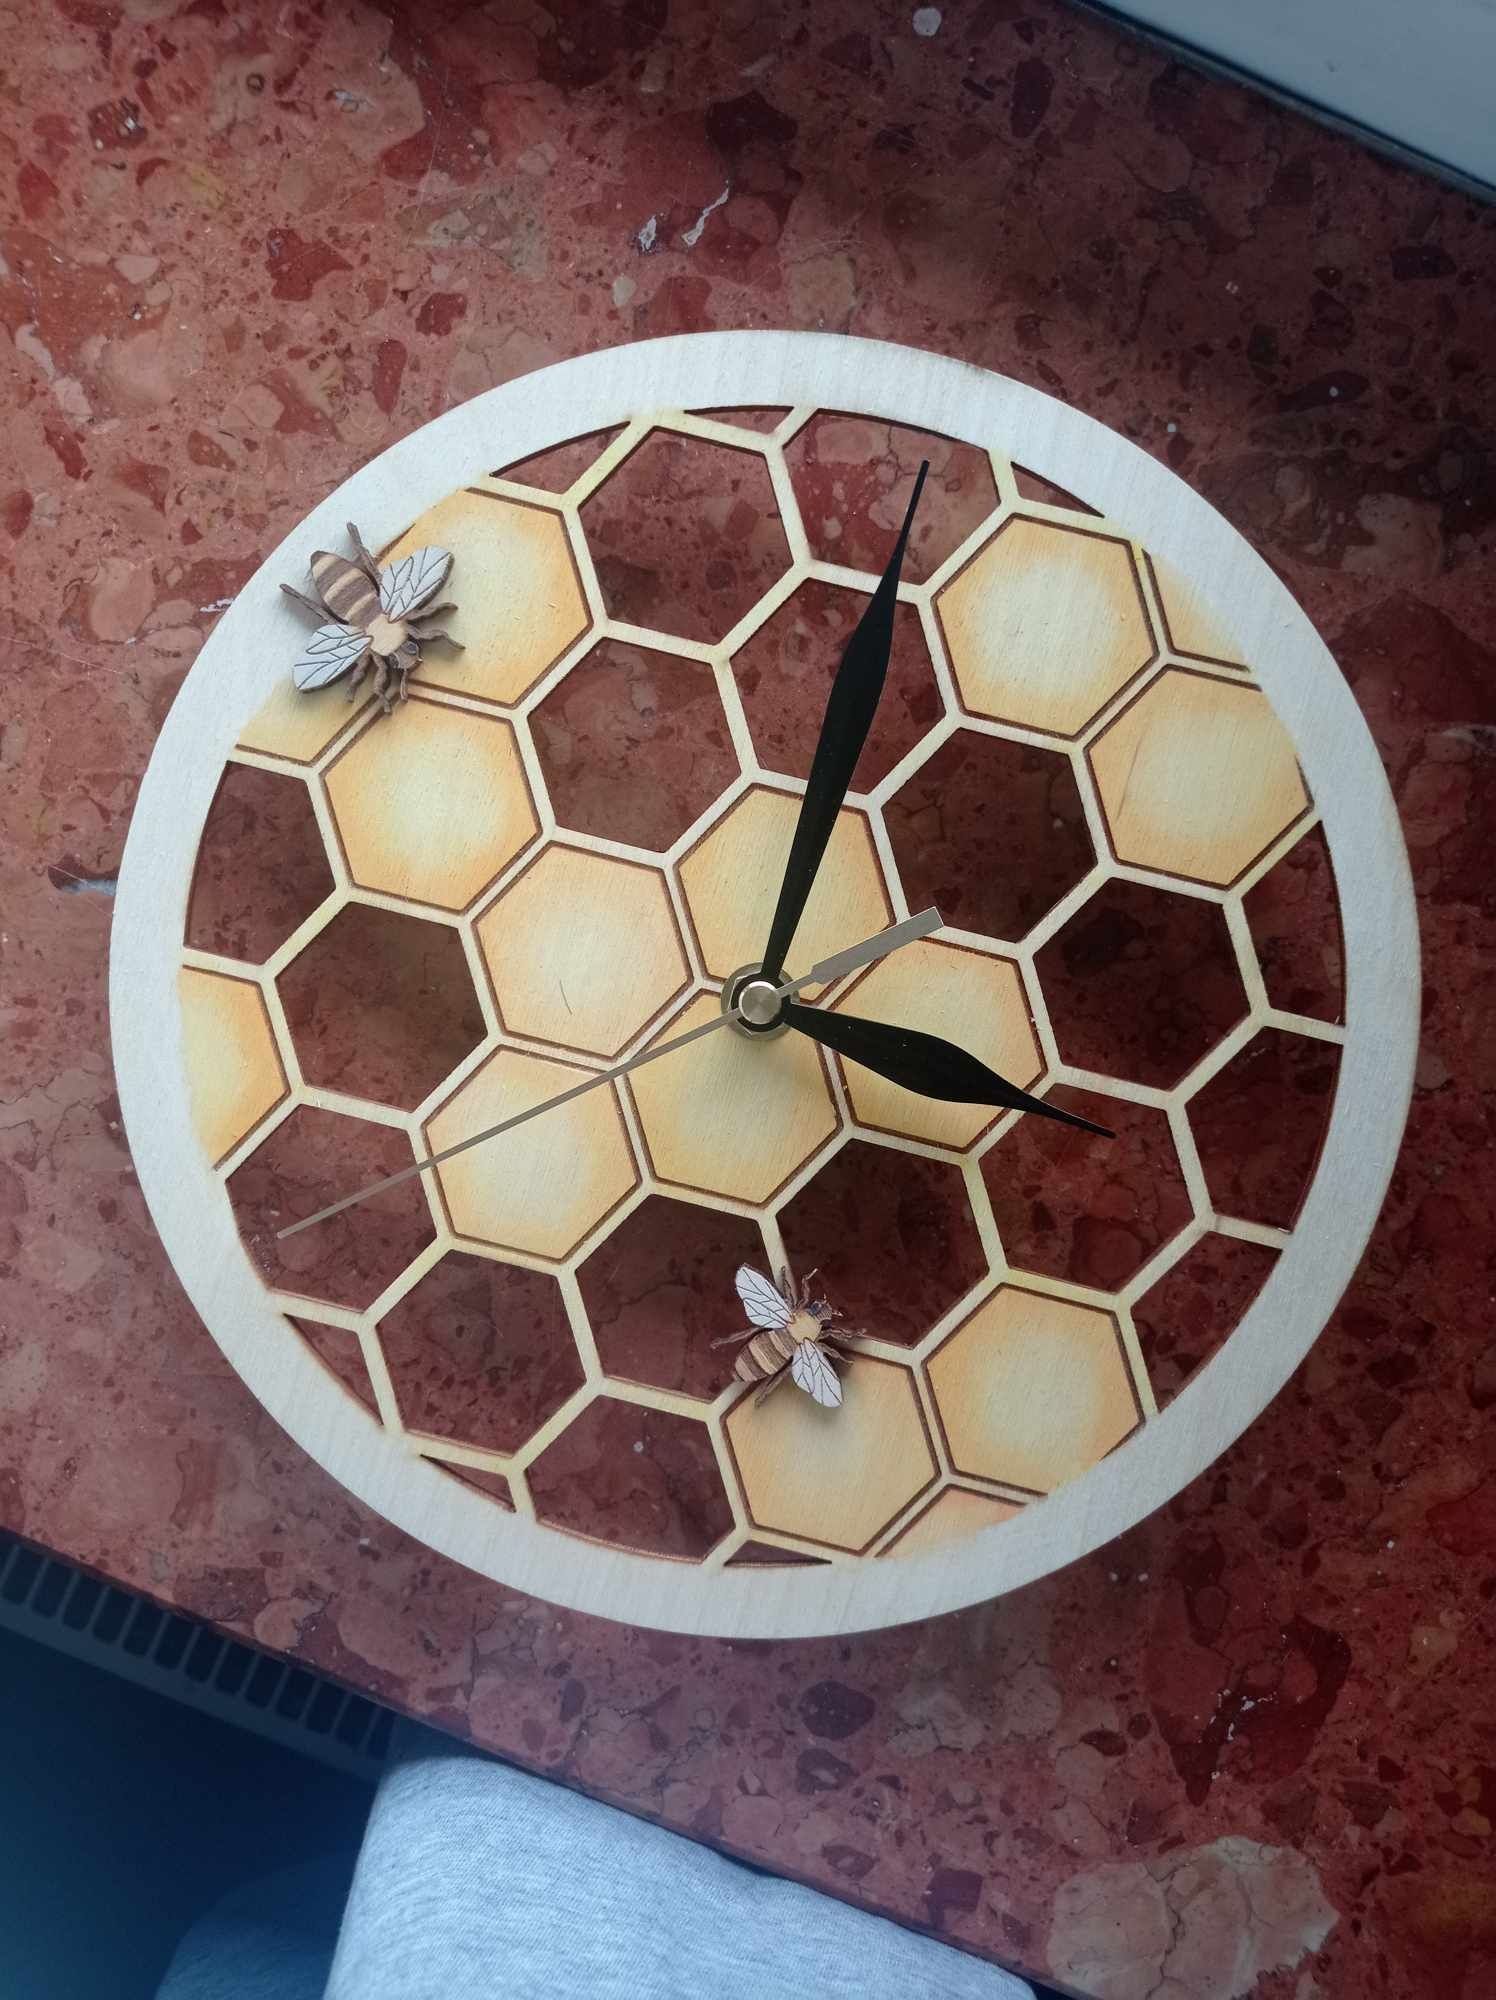 Zegar z motywem pszczoły - ręcznie malowany

Zegar z motywem pszczoły